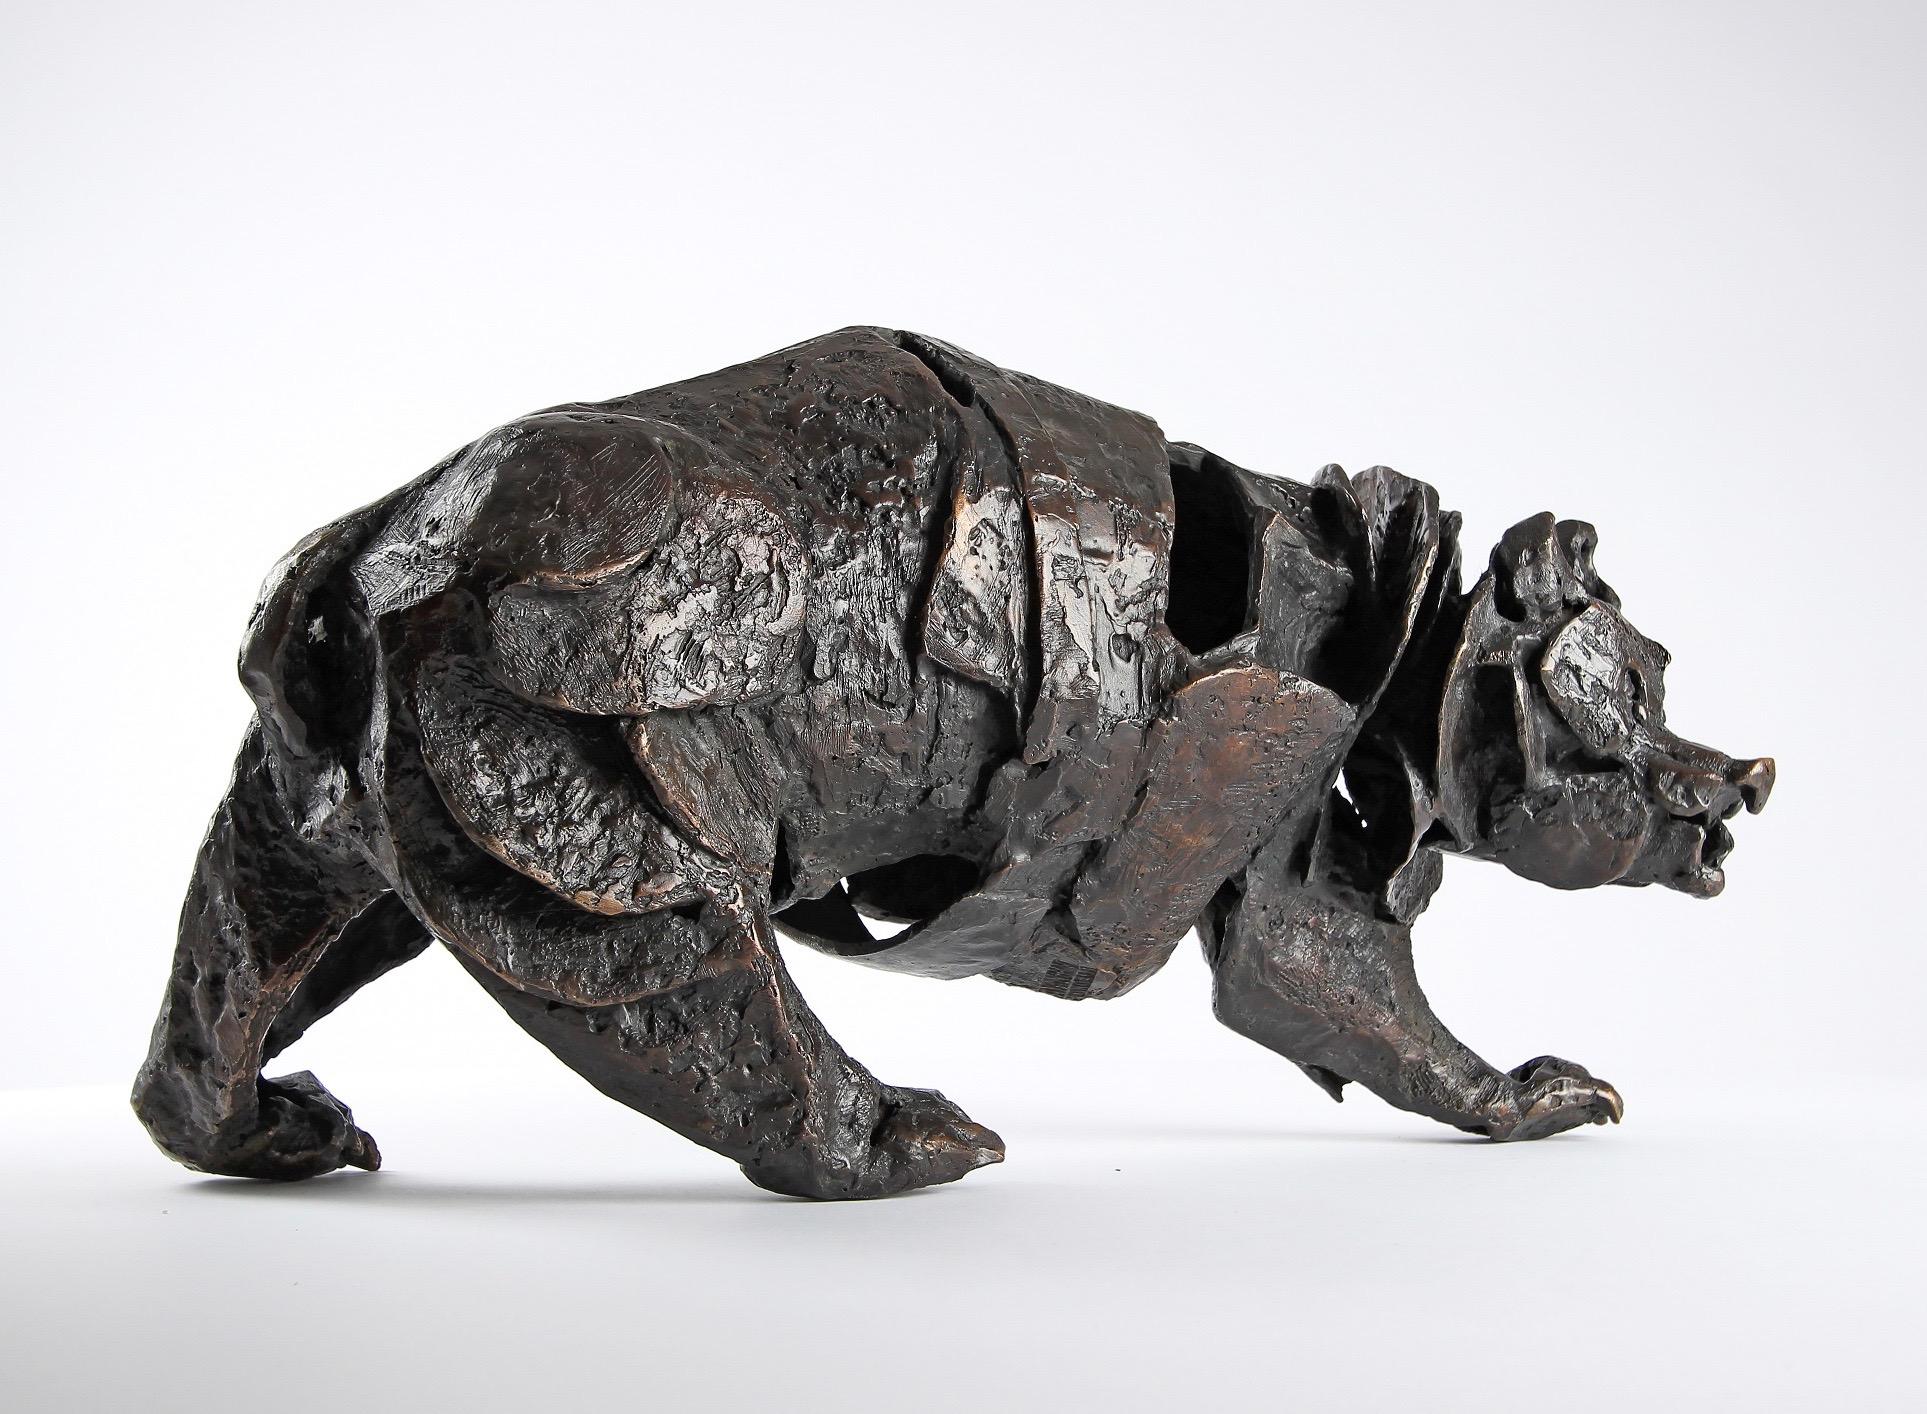 Assembly Bear, einmalige Bronzeskulptur des französischen zeitgenössischen Bildhauers Chésade. 18 cm × 40 cm × 23 cm.
Die Bronzeskulpturen von Chésade zeichnen sich durch eine sehr taktile und erzählerische Oberfläche aus, bei der ein einziges